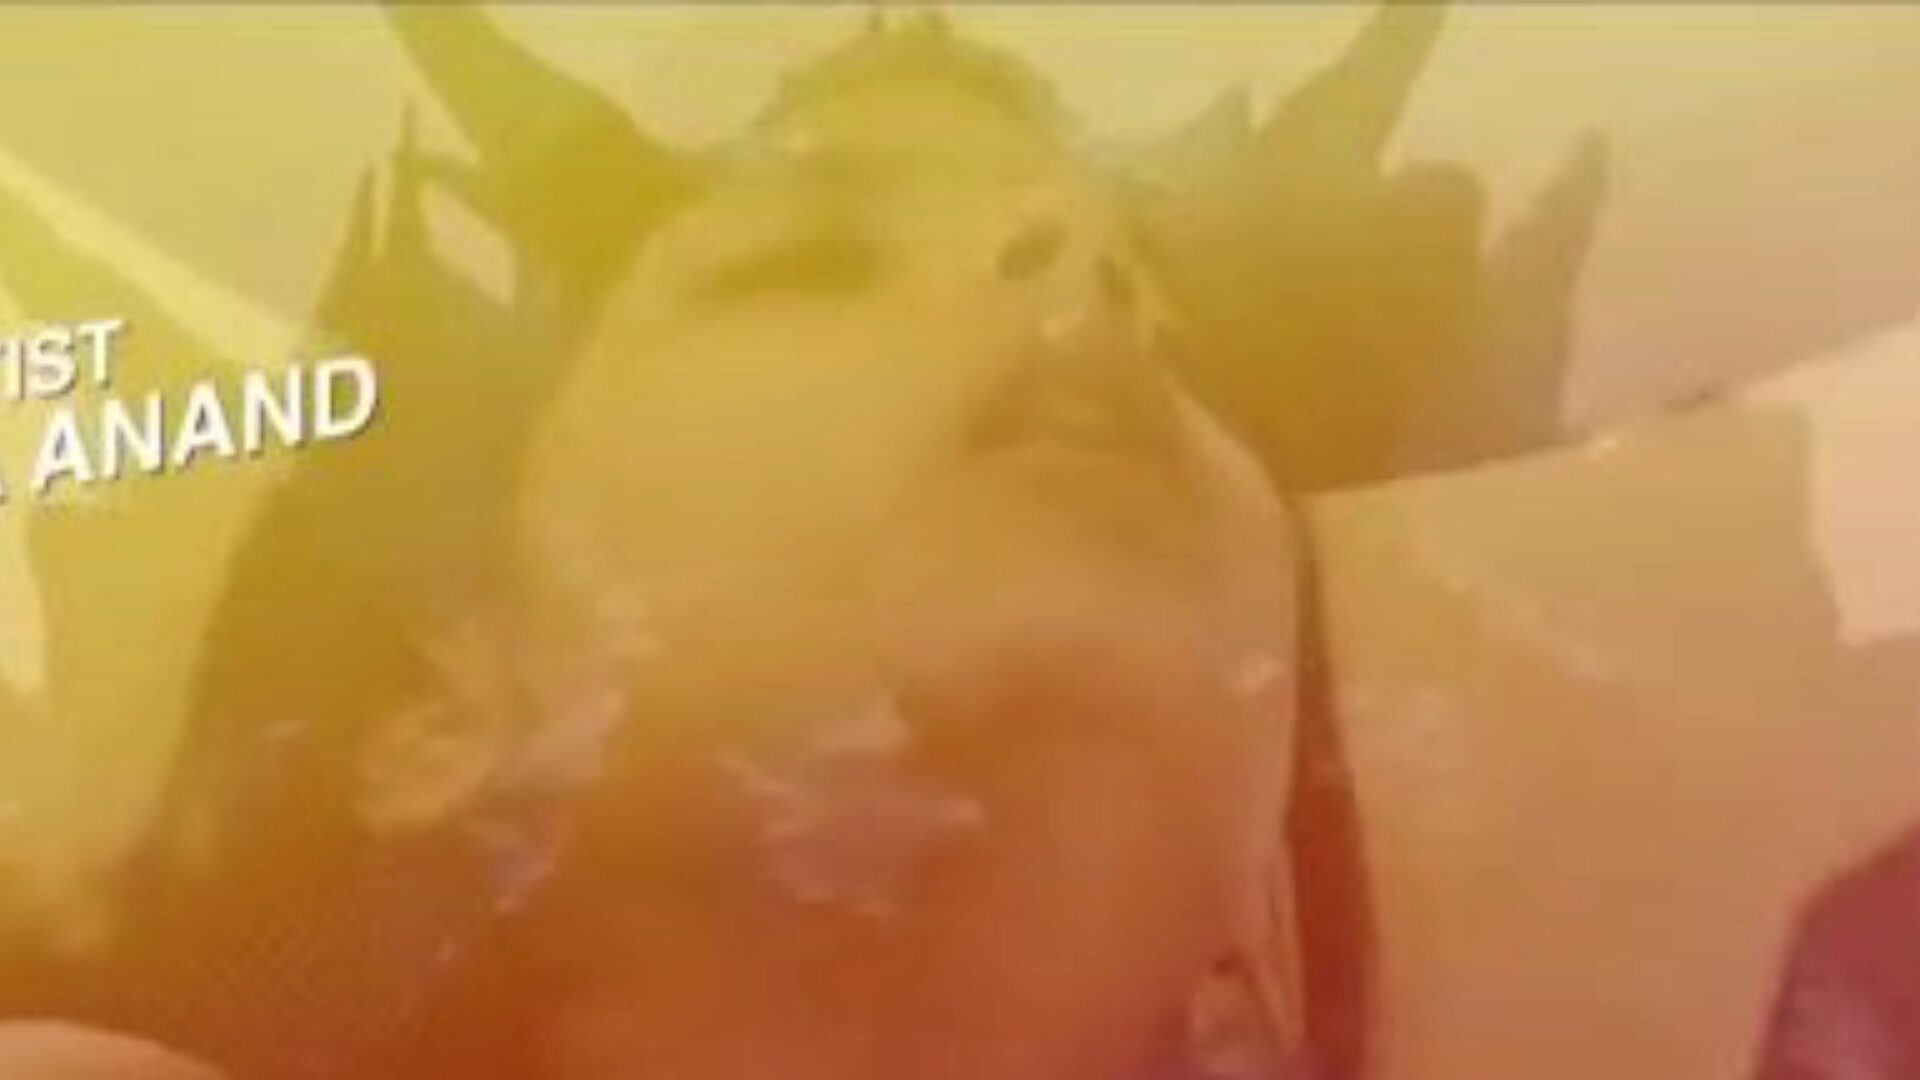 غارام هوا 2020: فيديو إباحي هندي مجاني 24 - Xhamster شاهد Garam Hwa 2020 Tube Lovemaking Movie Scene مجانًا للجميع على xhamster ، مع المجموعة الأكثر جاذبية من الأفلام الإباحية الآسيوية الهندية وسلسلة الويب